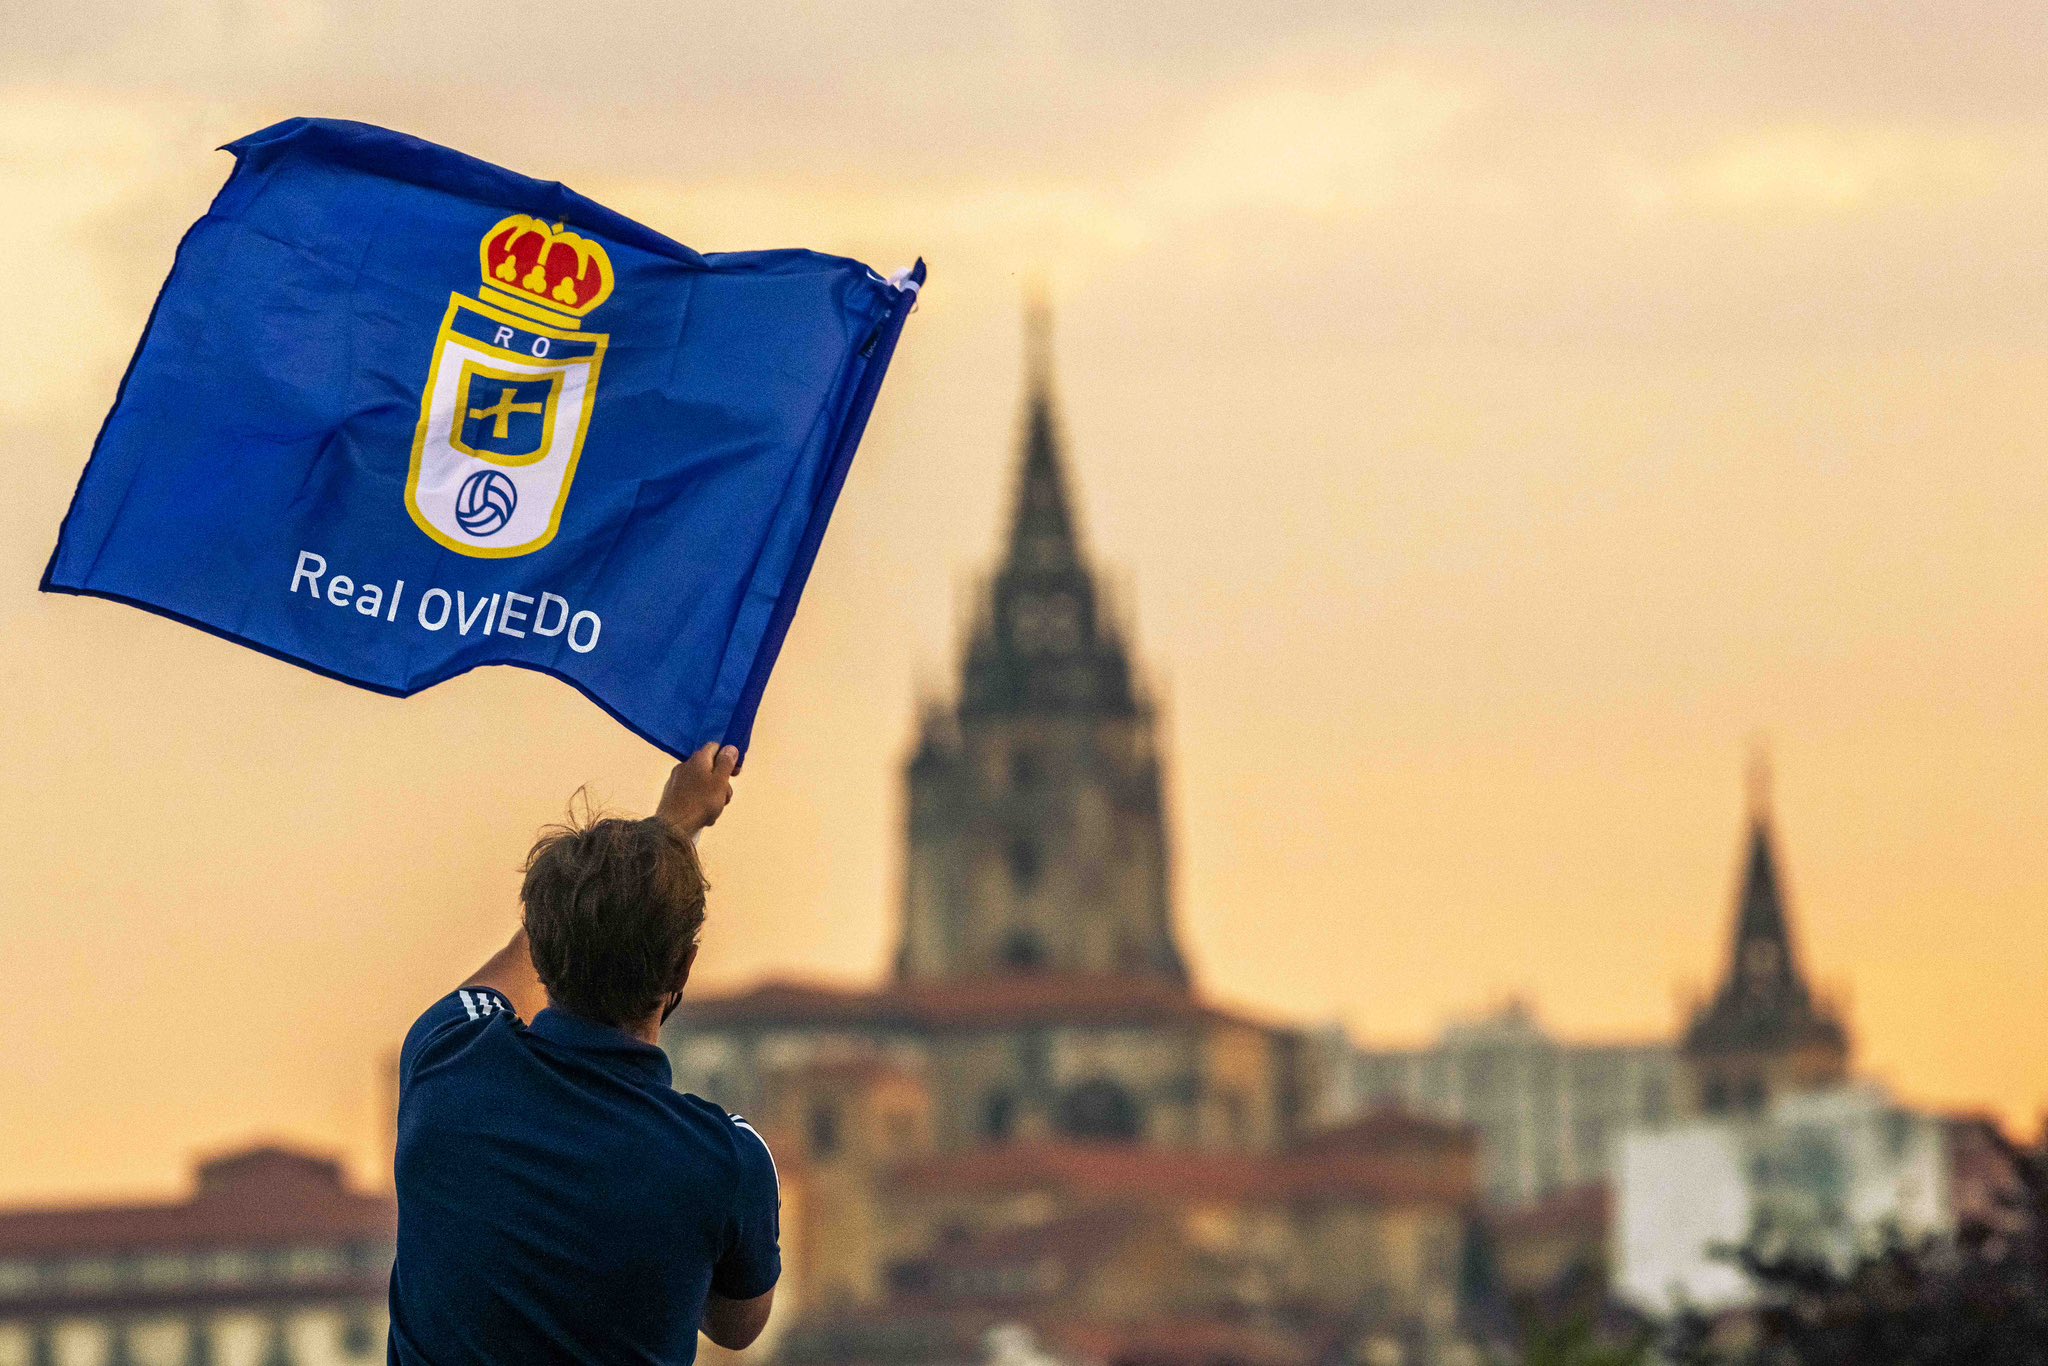 Aficionado del Real Oviedo